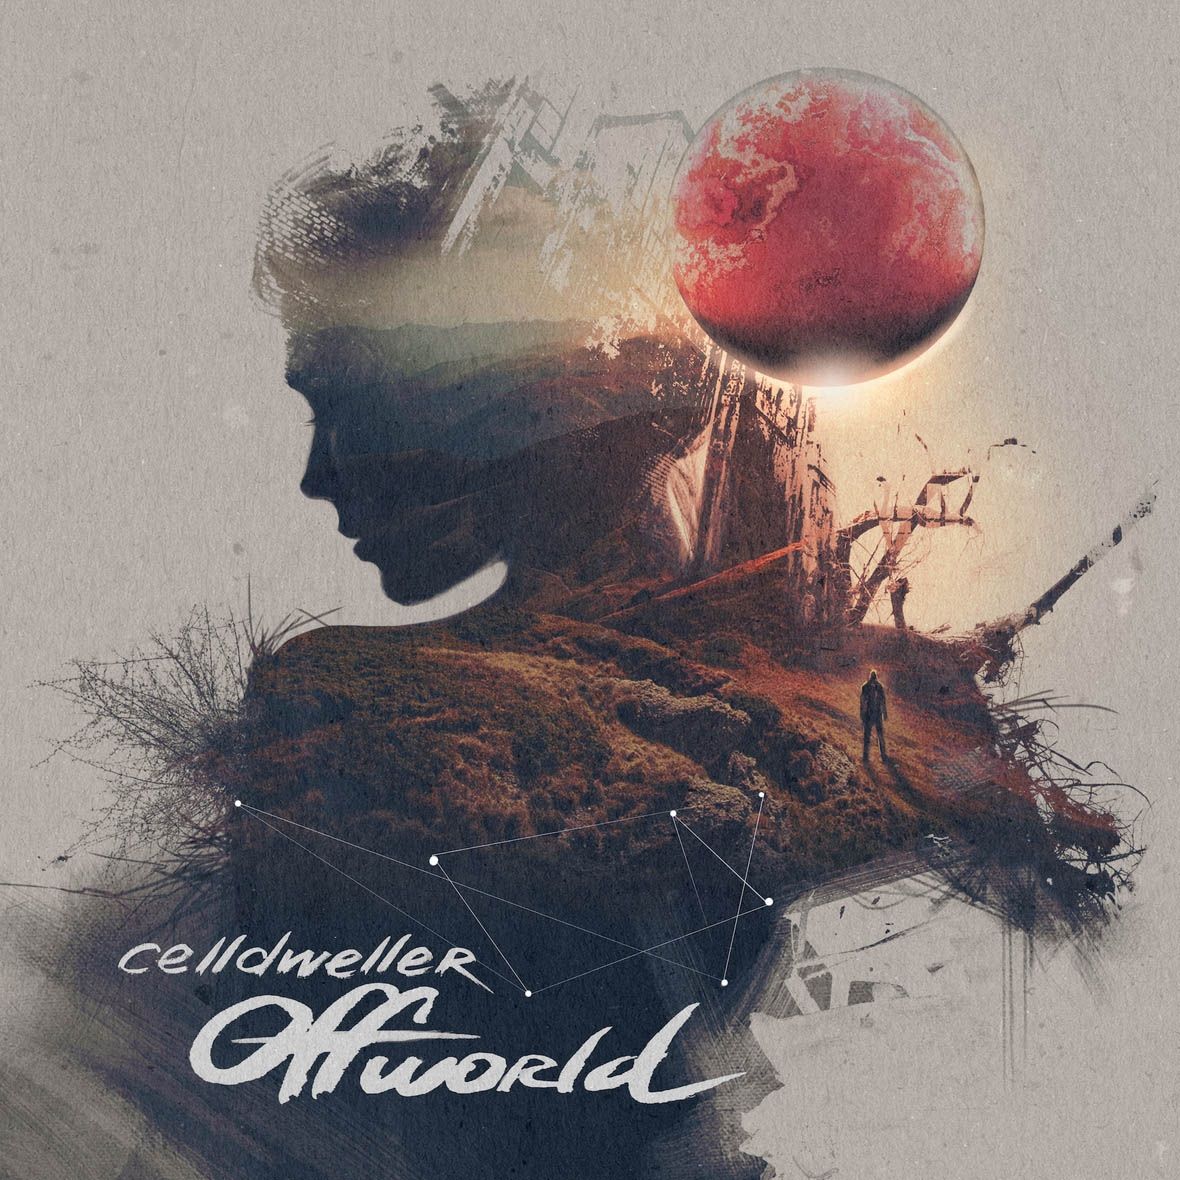 Imagem do álbum Offworld do(a) artista Celldweller